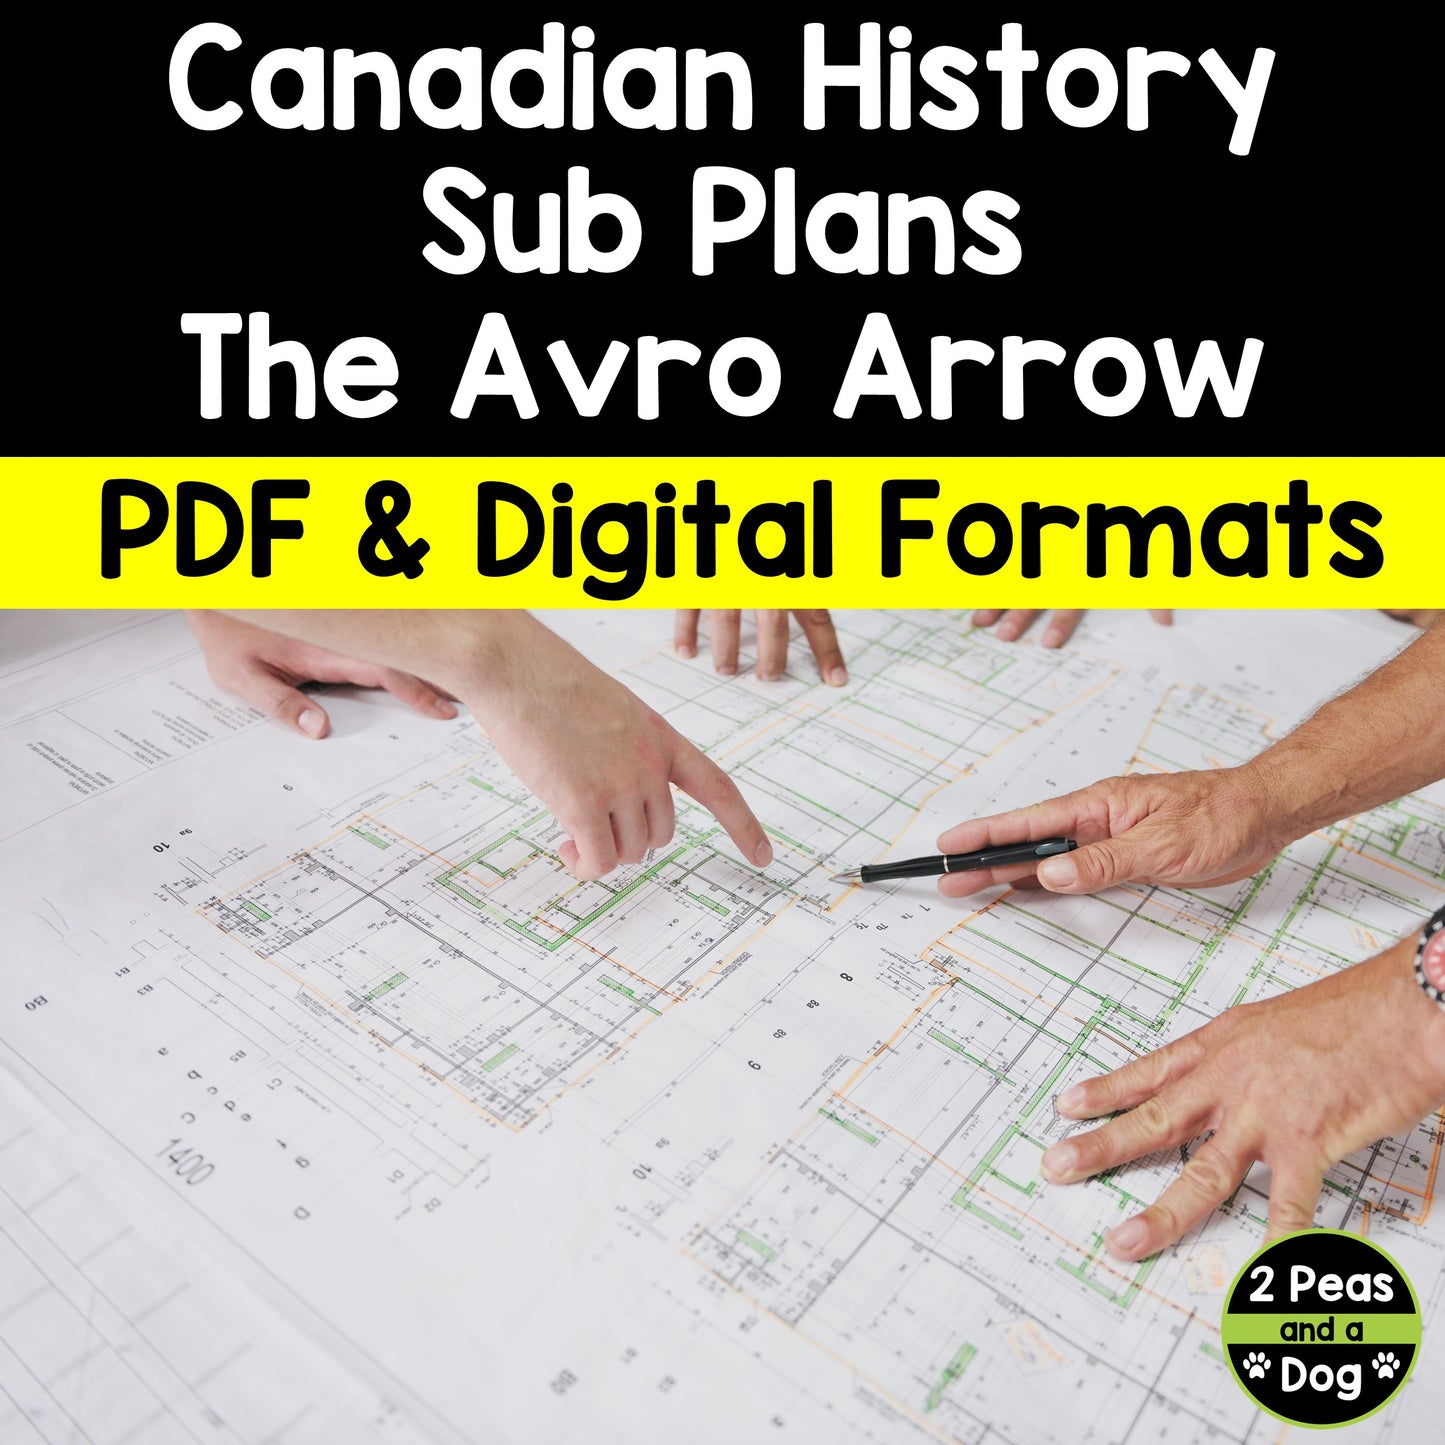 Canadian History Sub Plans - The Avro Arrow